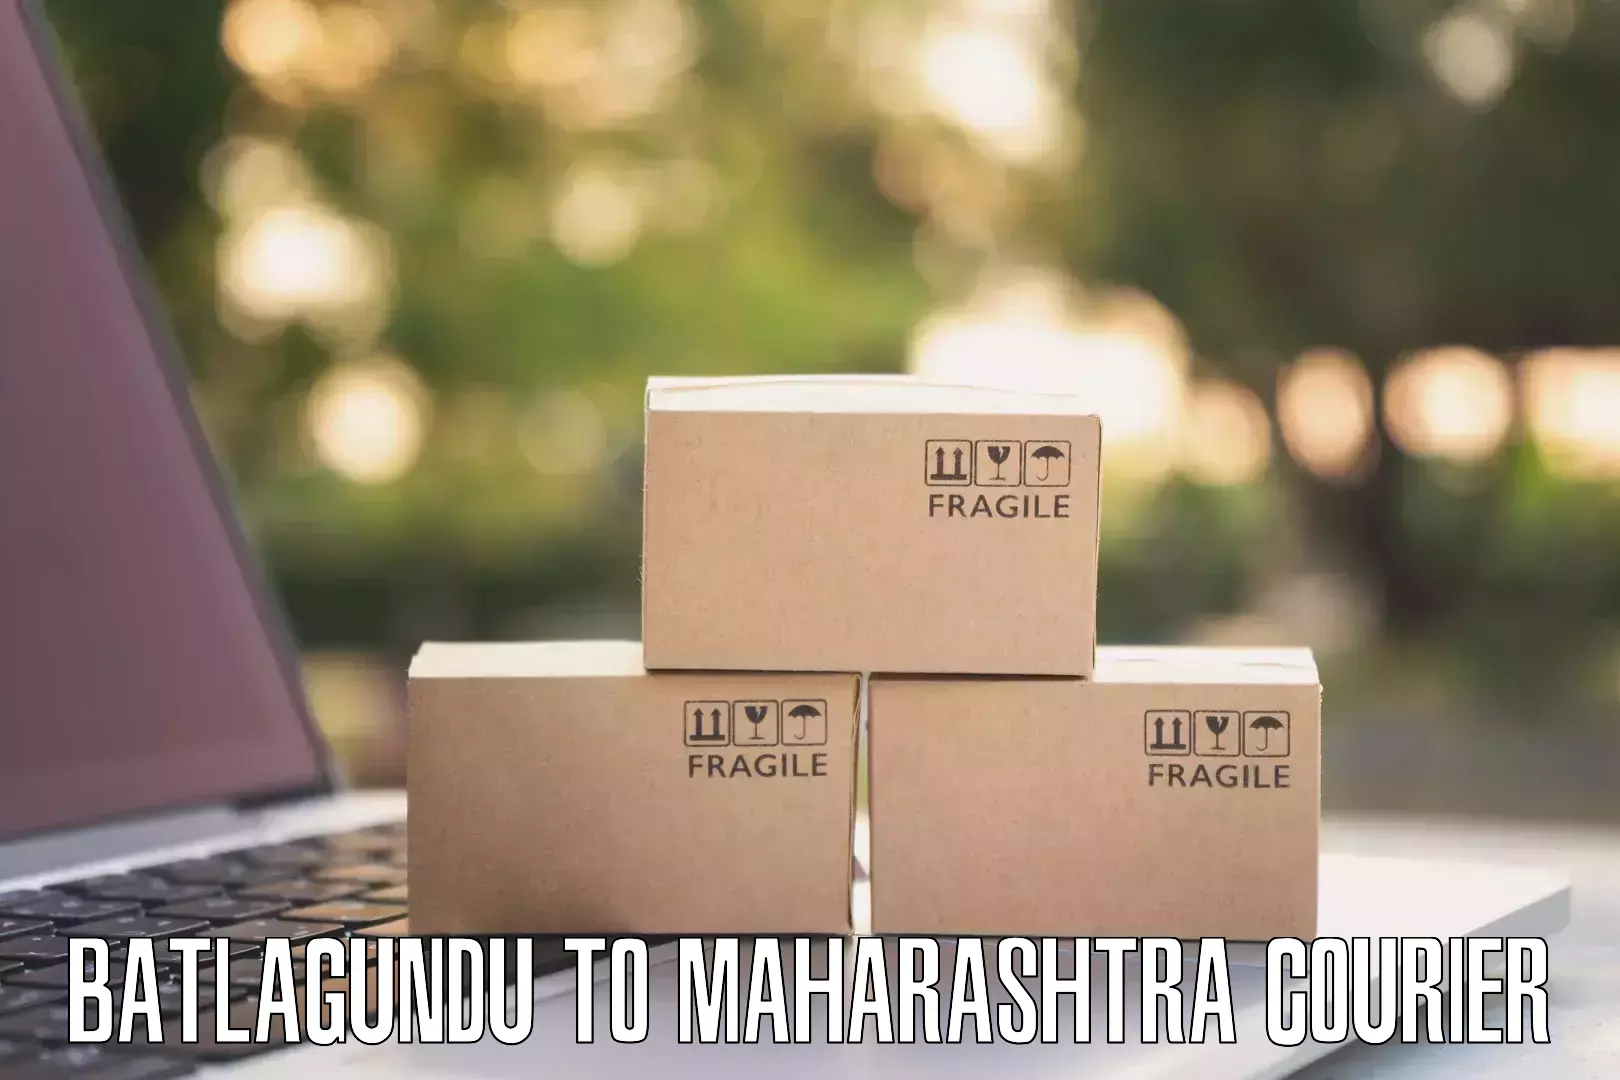 Reliable package handling in Batlagundu to Vairag